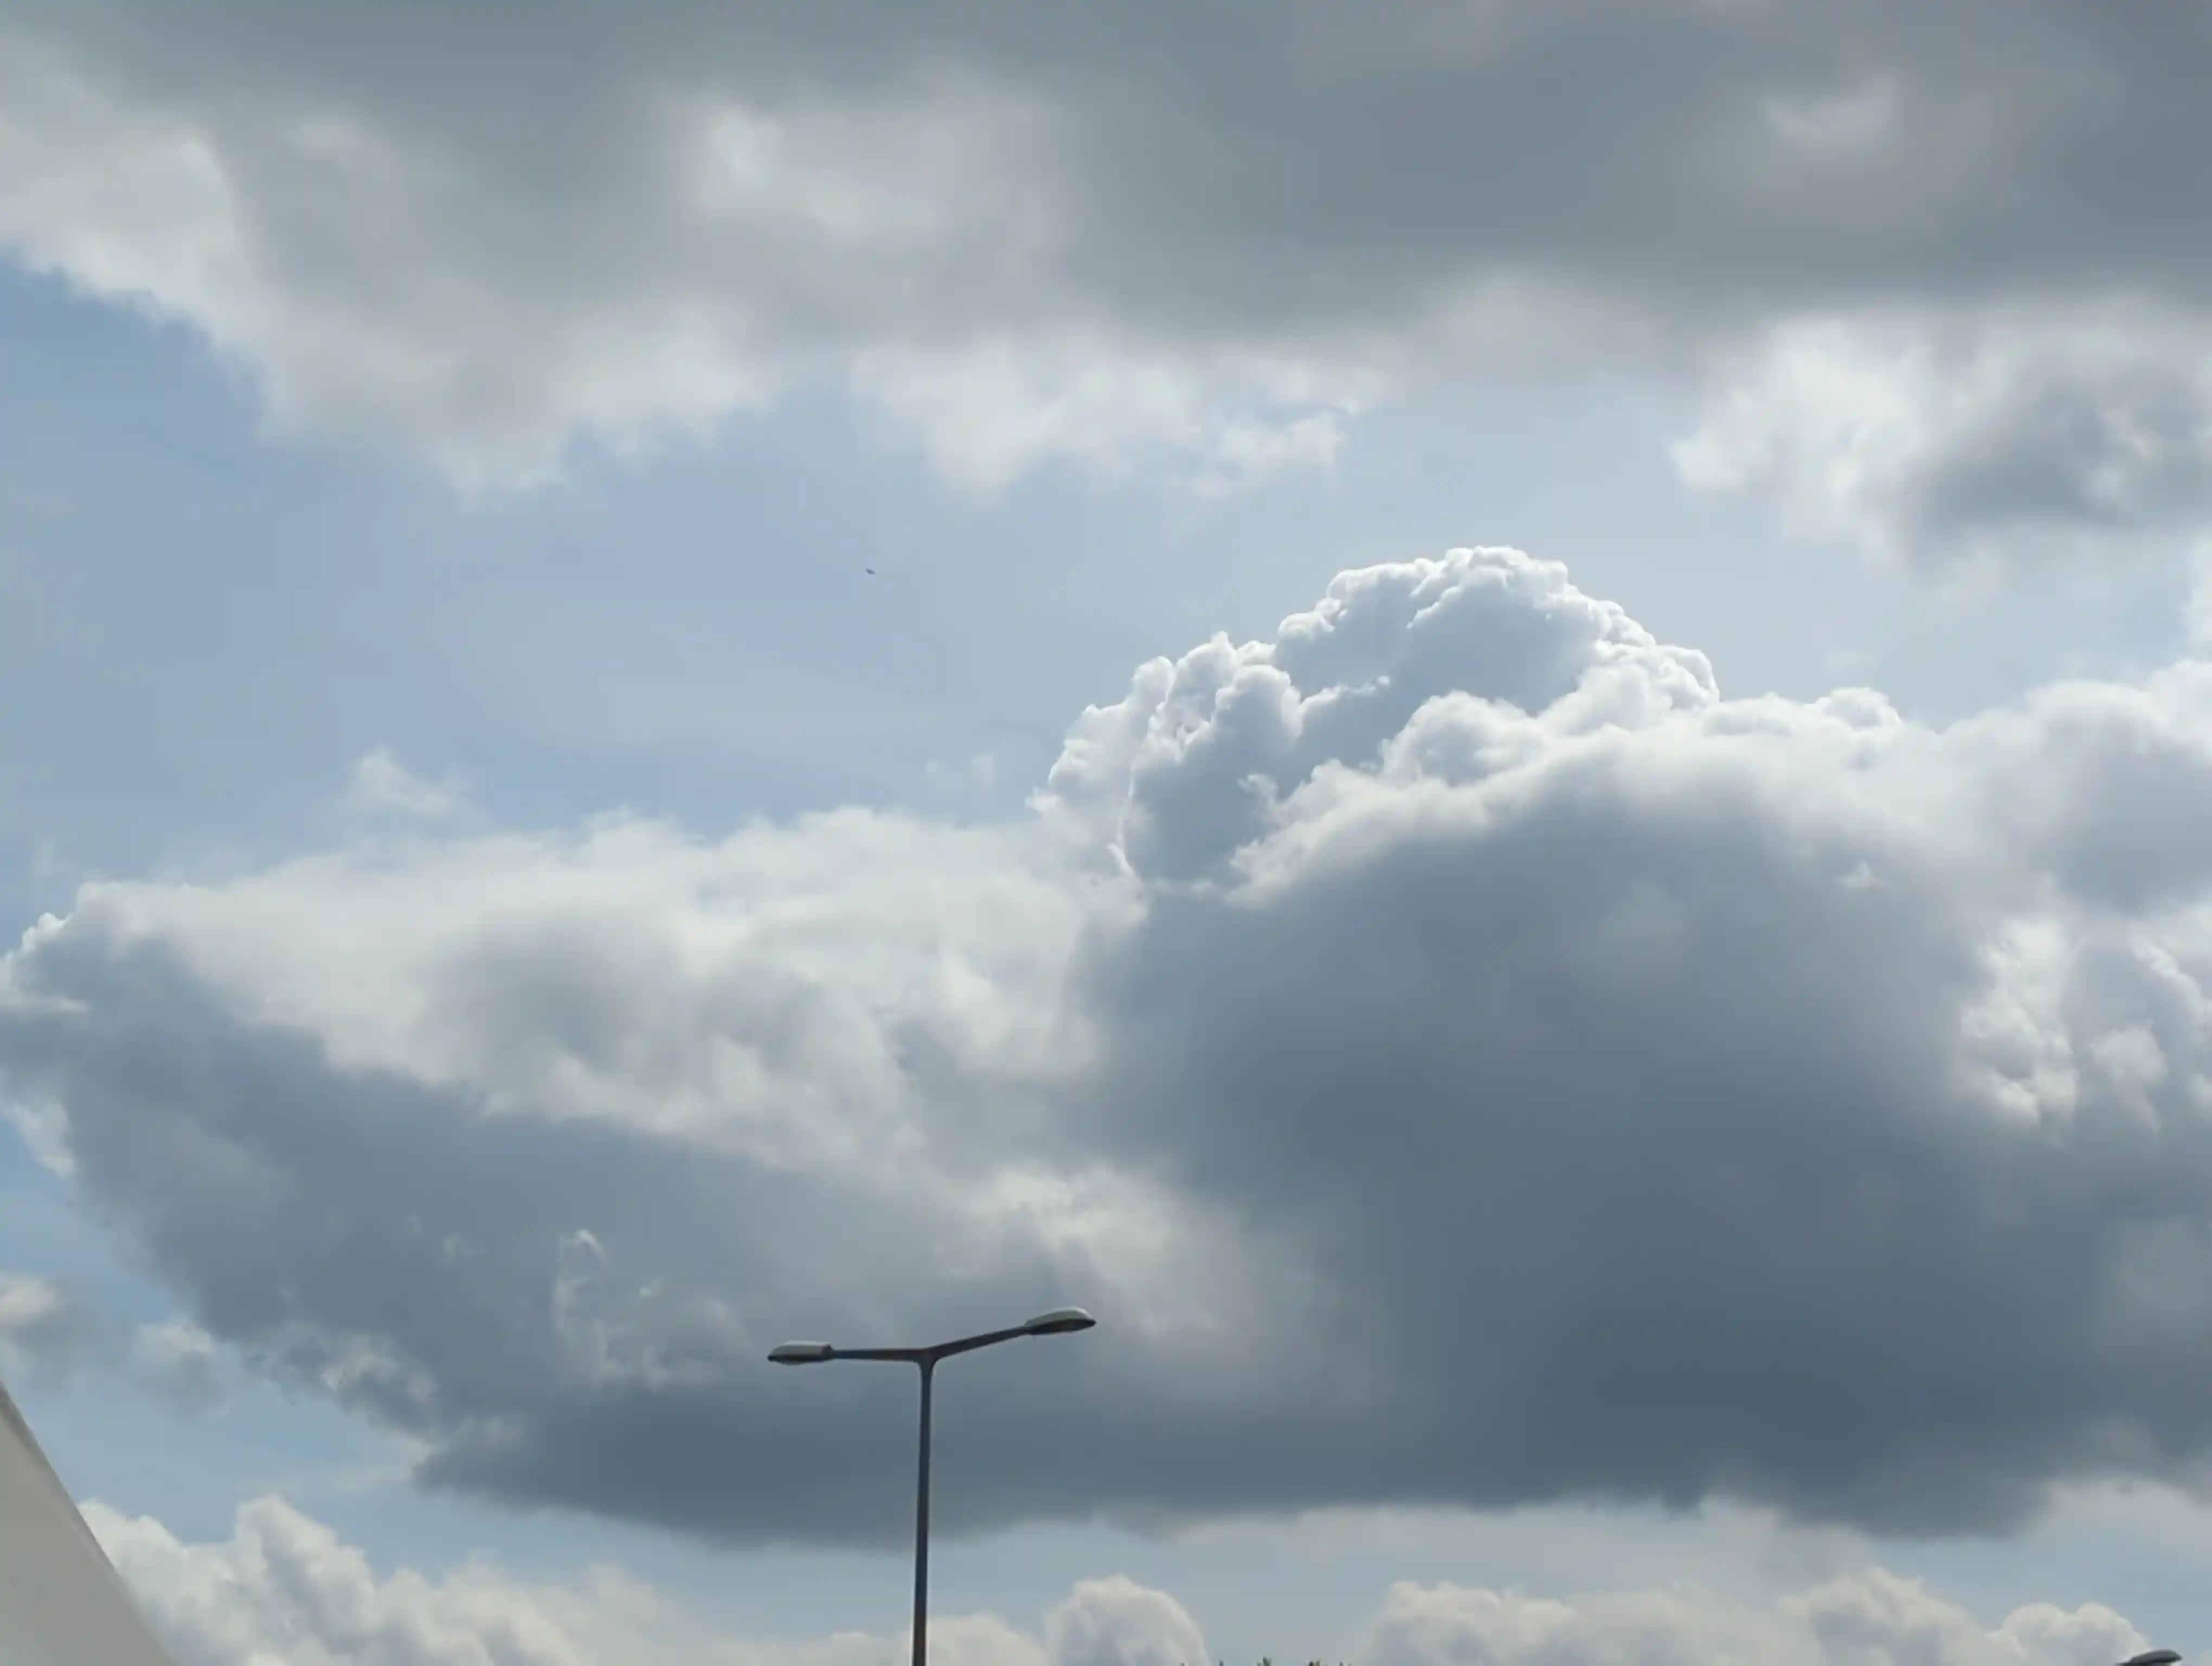 A cool cloud